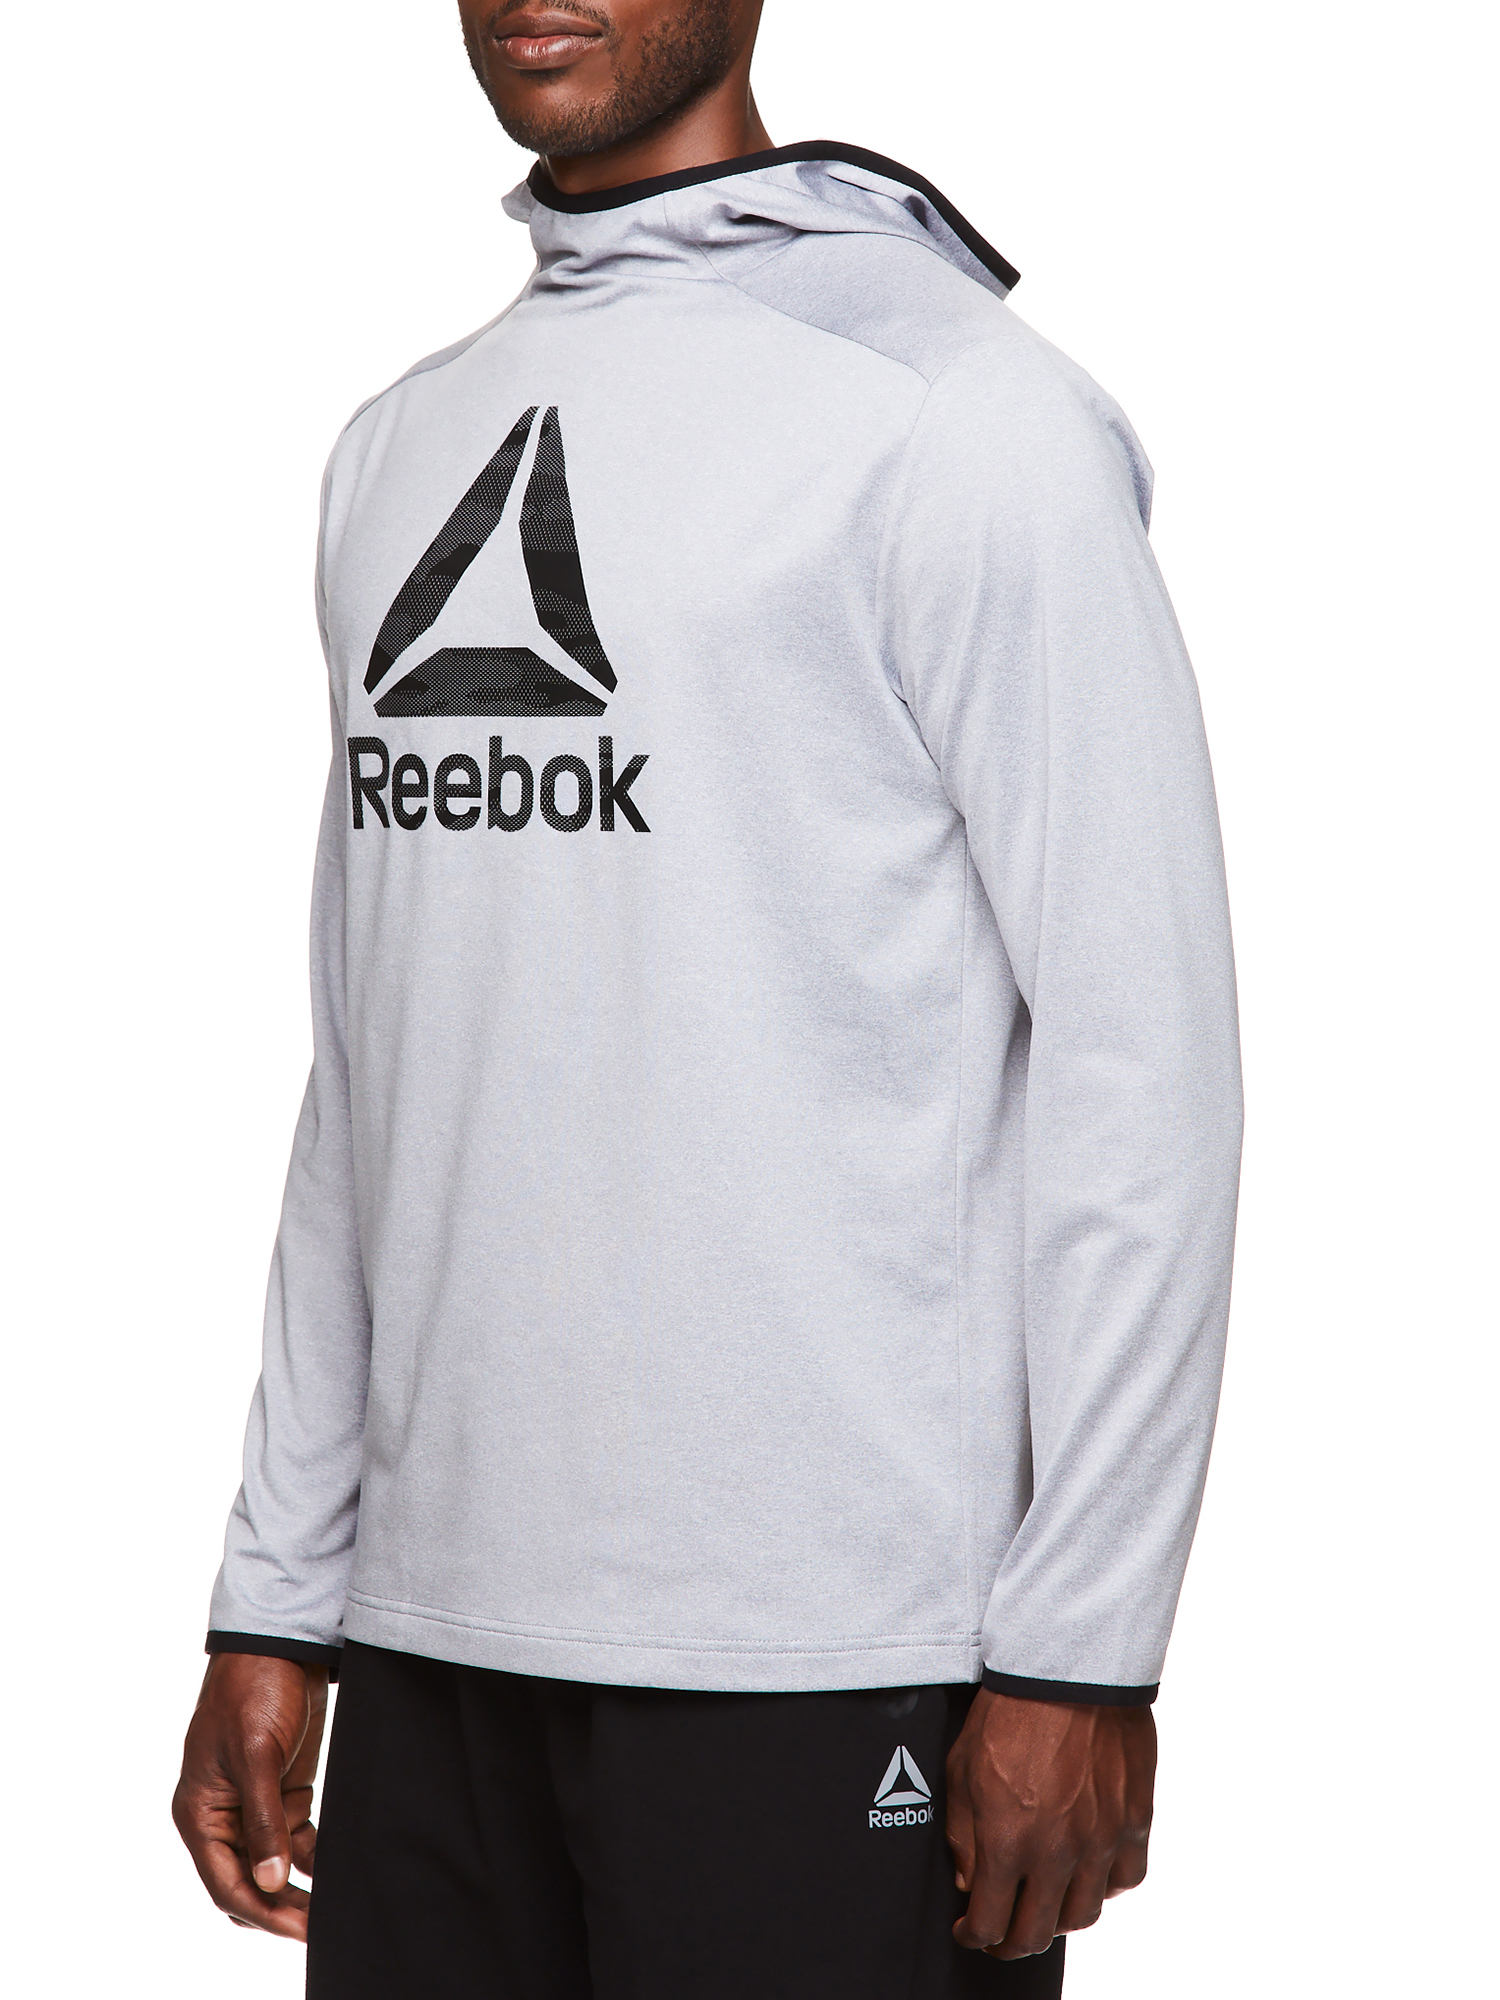 Reebok Men's and Big Men's Active Fleece Jersey Hood, up to Size 3XL - image 3 of 4